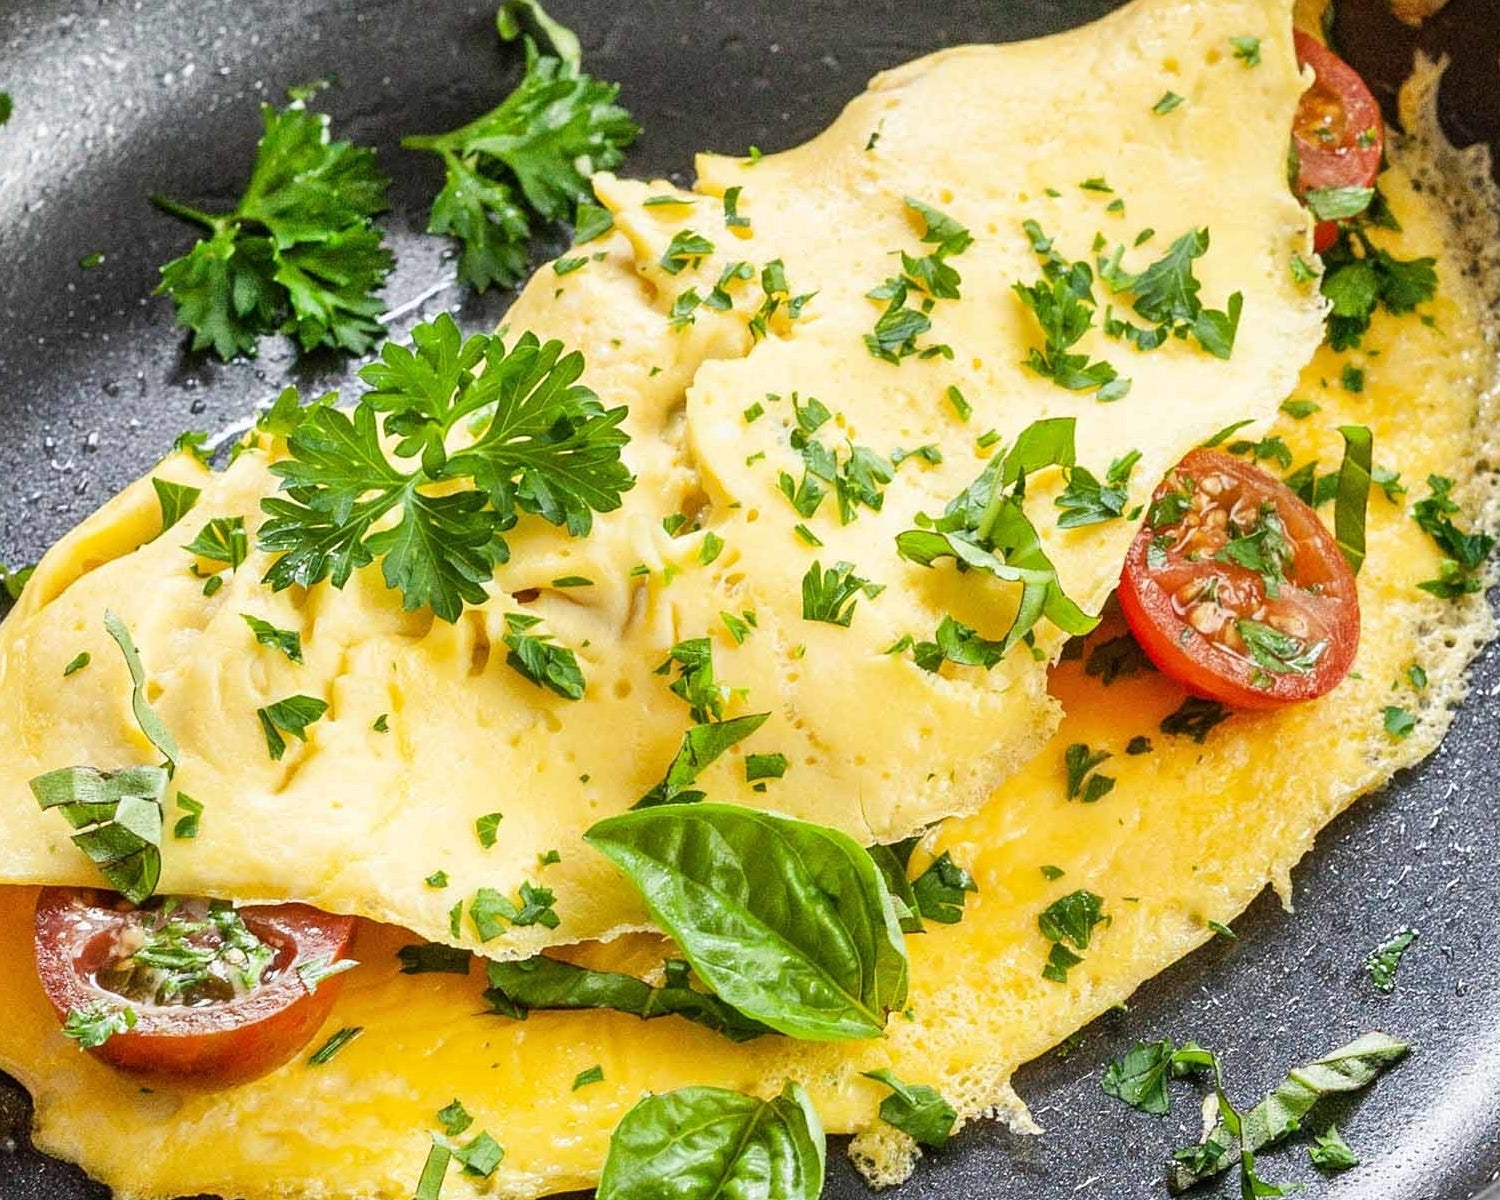 Herbal Infused Mediterranean Omelette